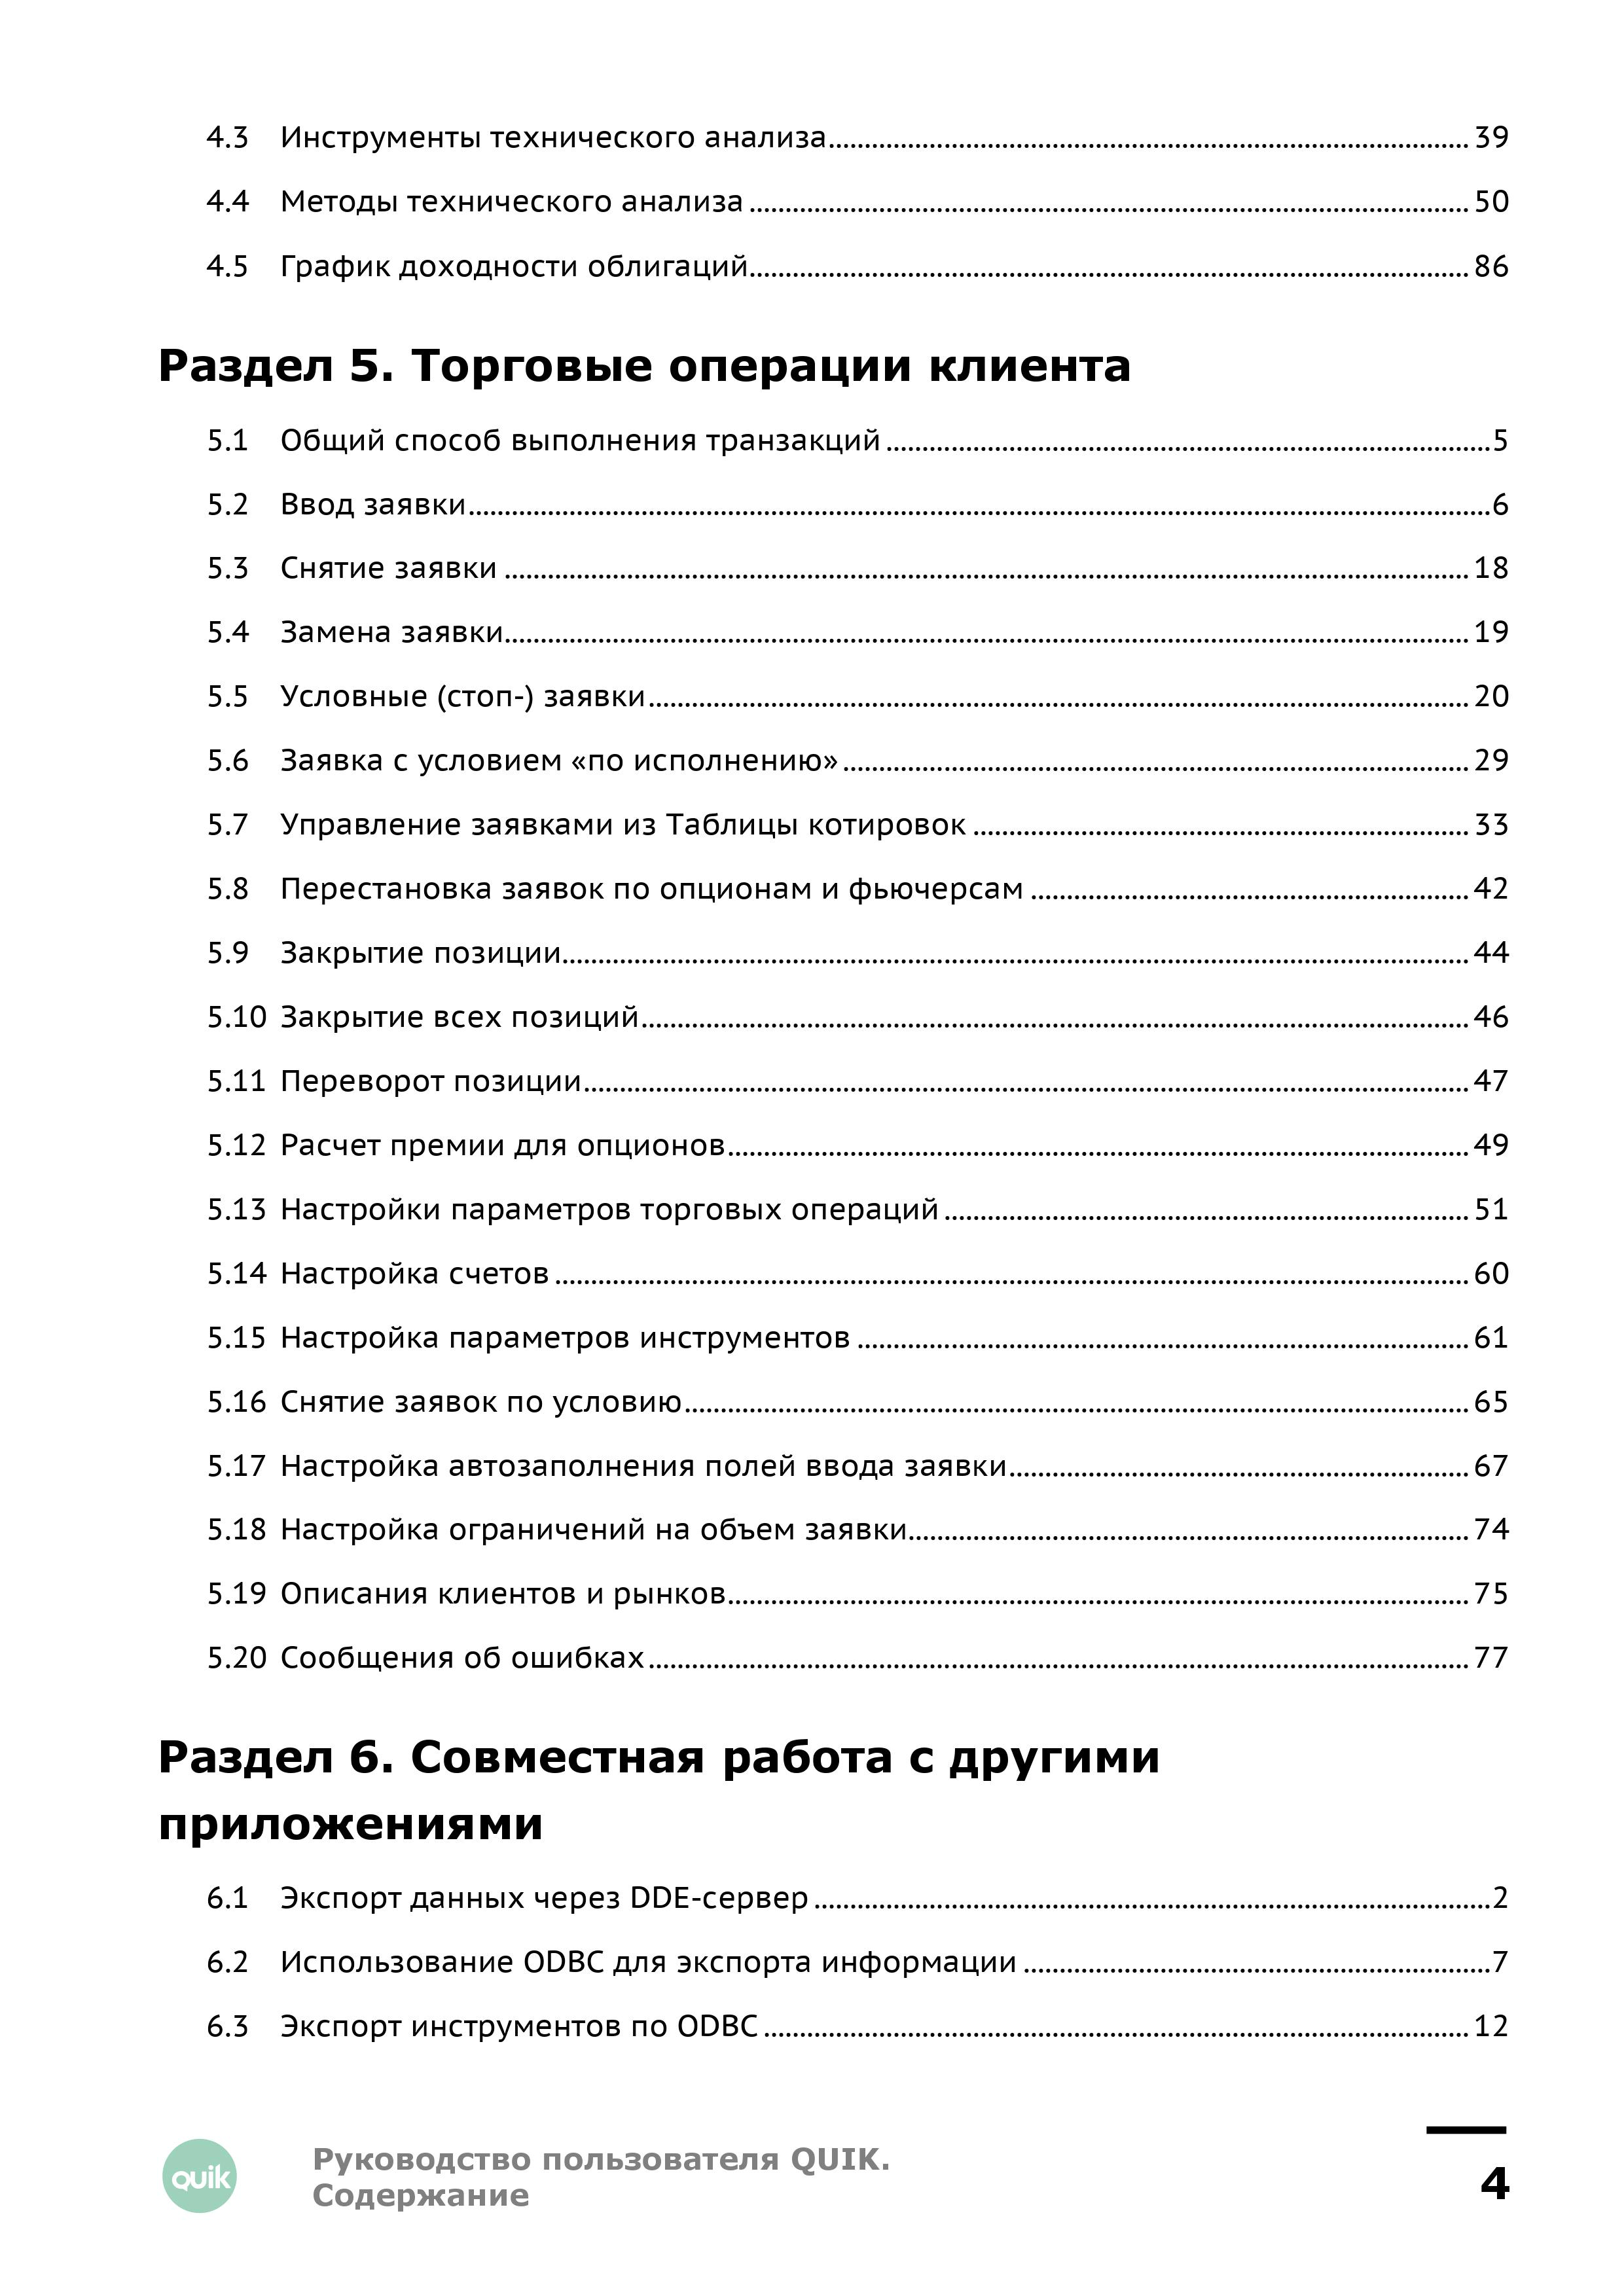 Подробной инструкции по работе с платформой стр. 4